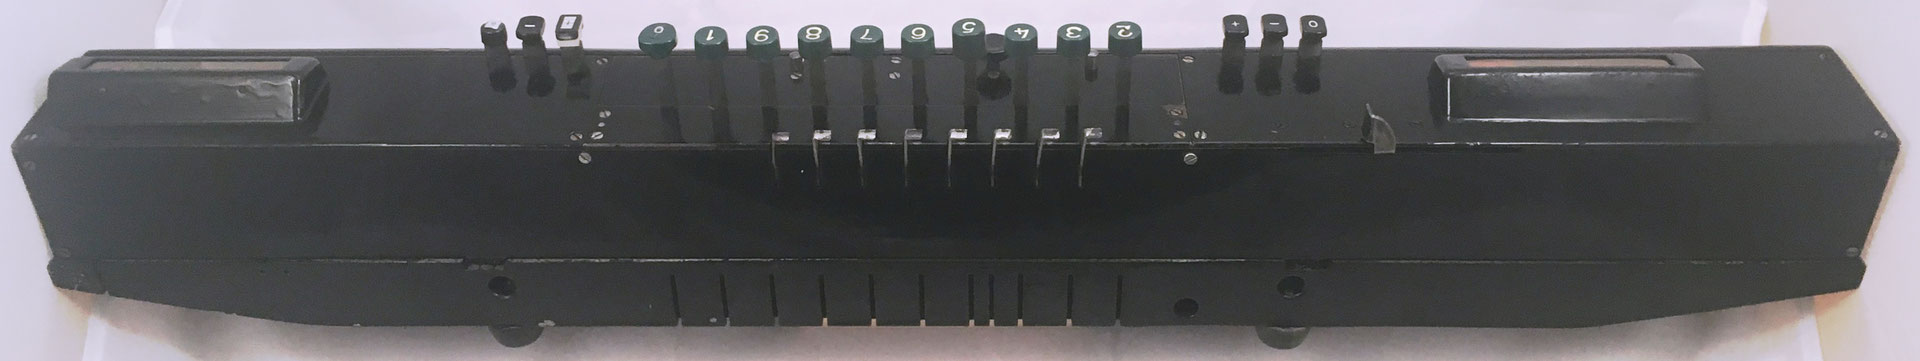 Vista posterior de la calculadora SALDOMAT con las palancas tabuladoras